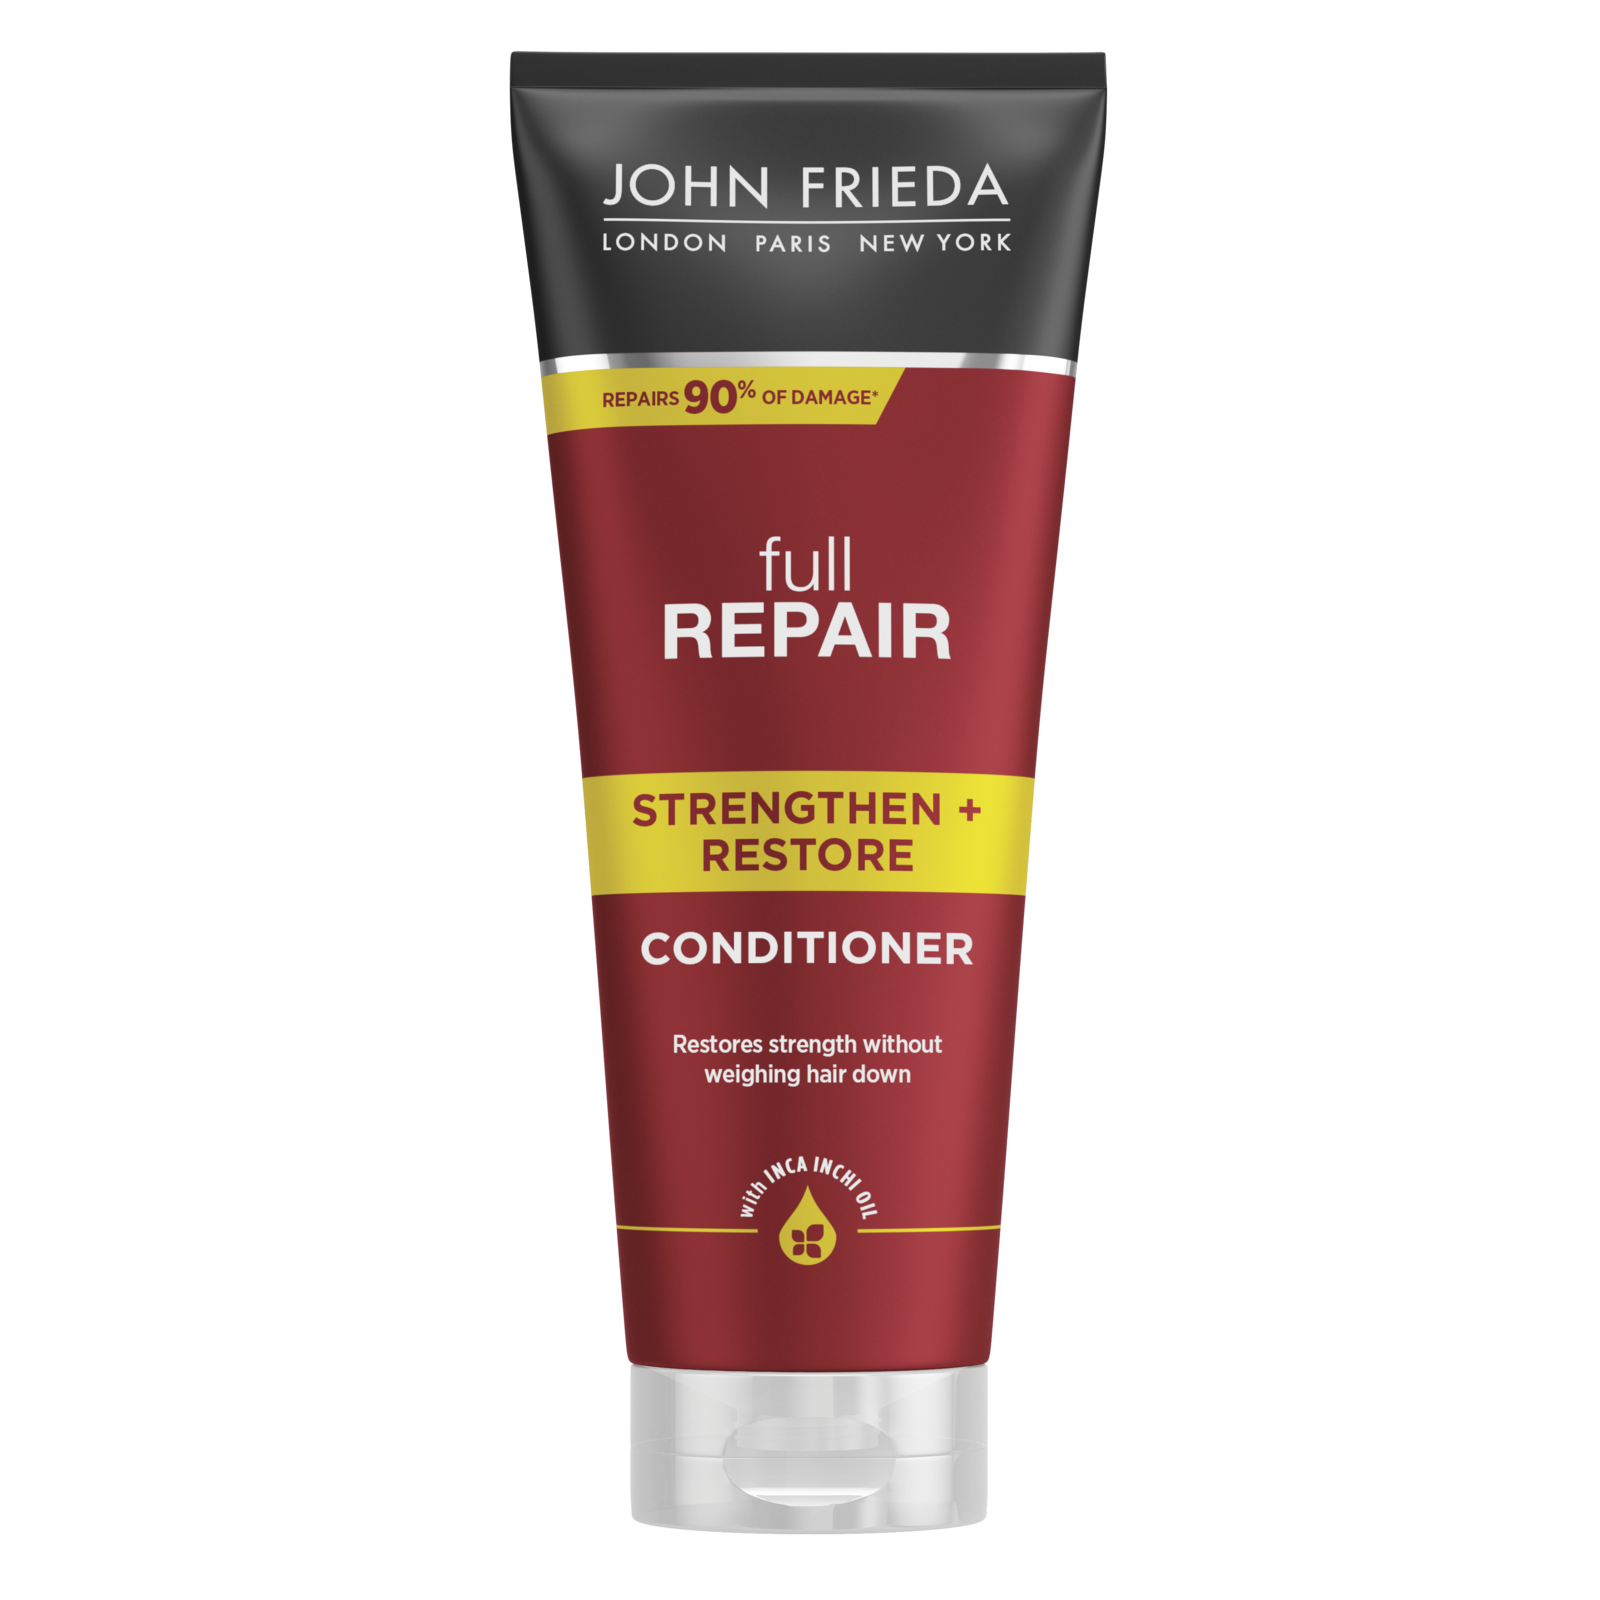 John Frieda Full Repair Strengthen + Restore Conditioner kopen